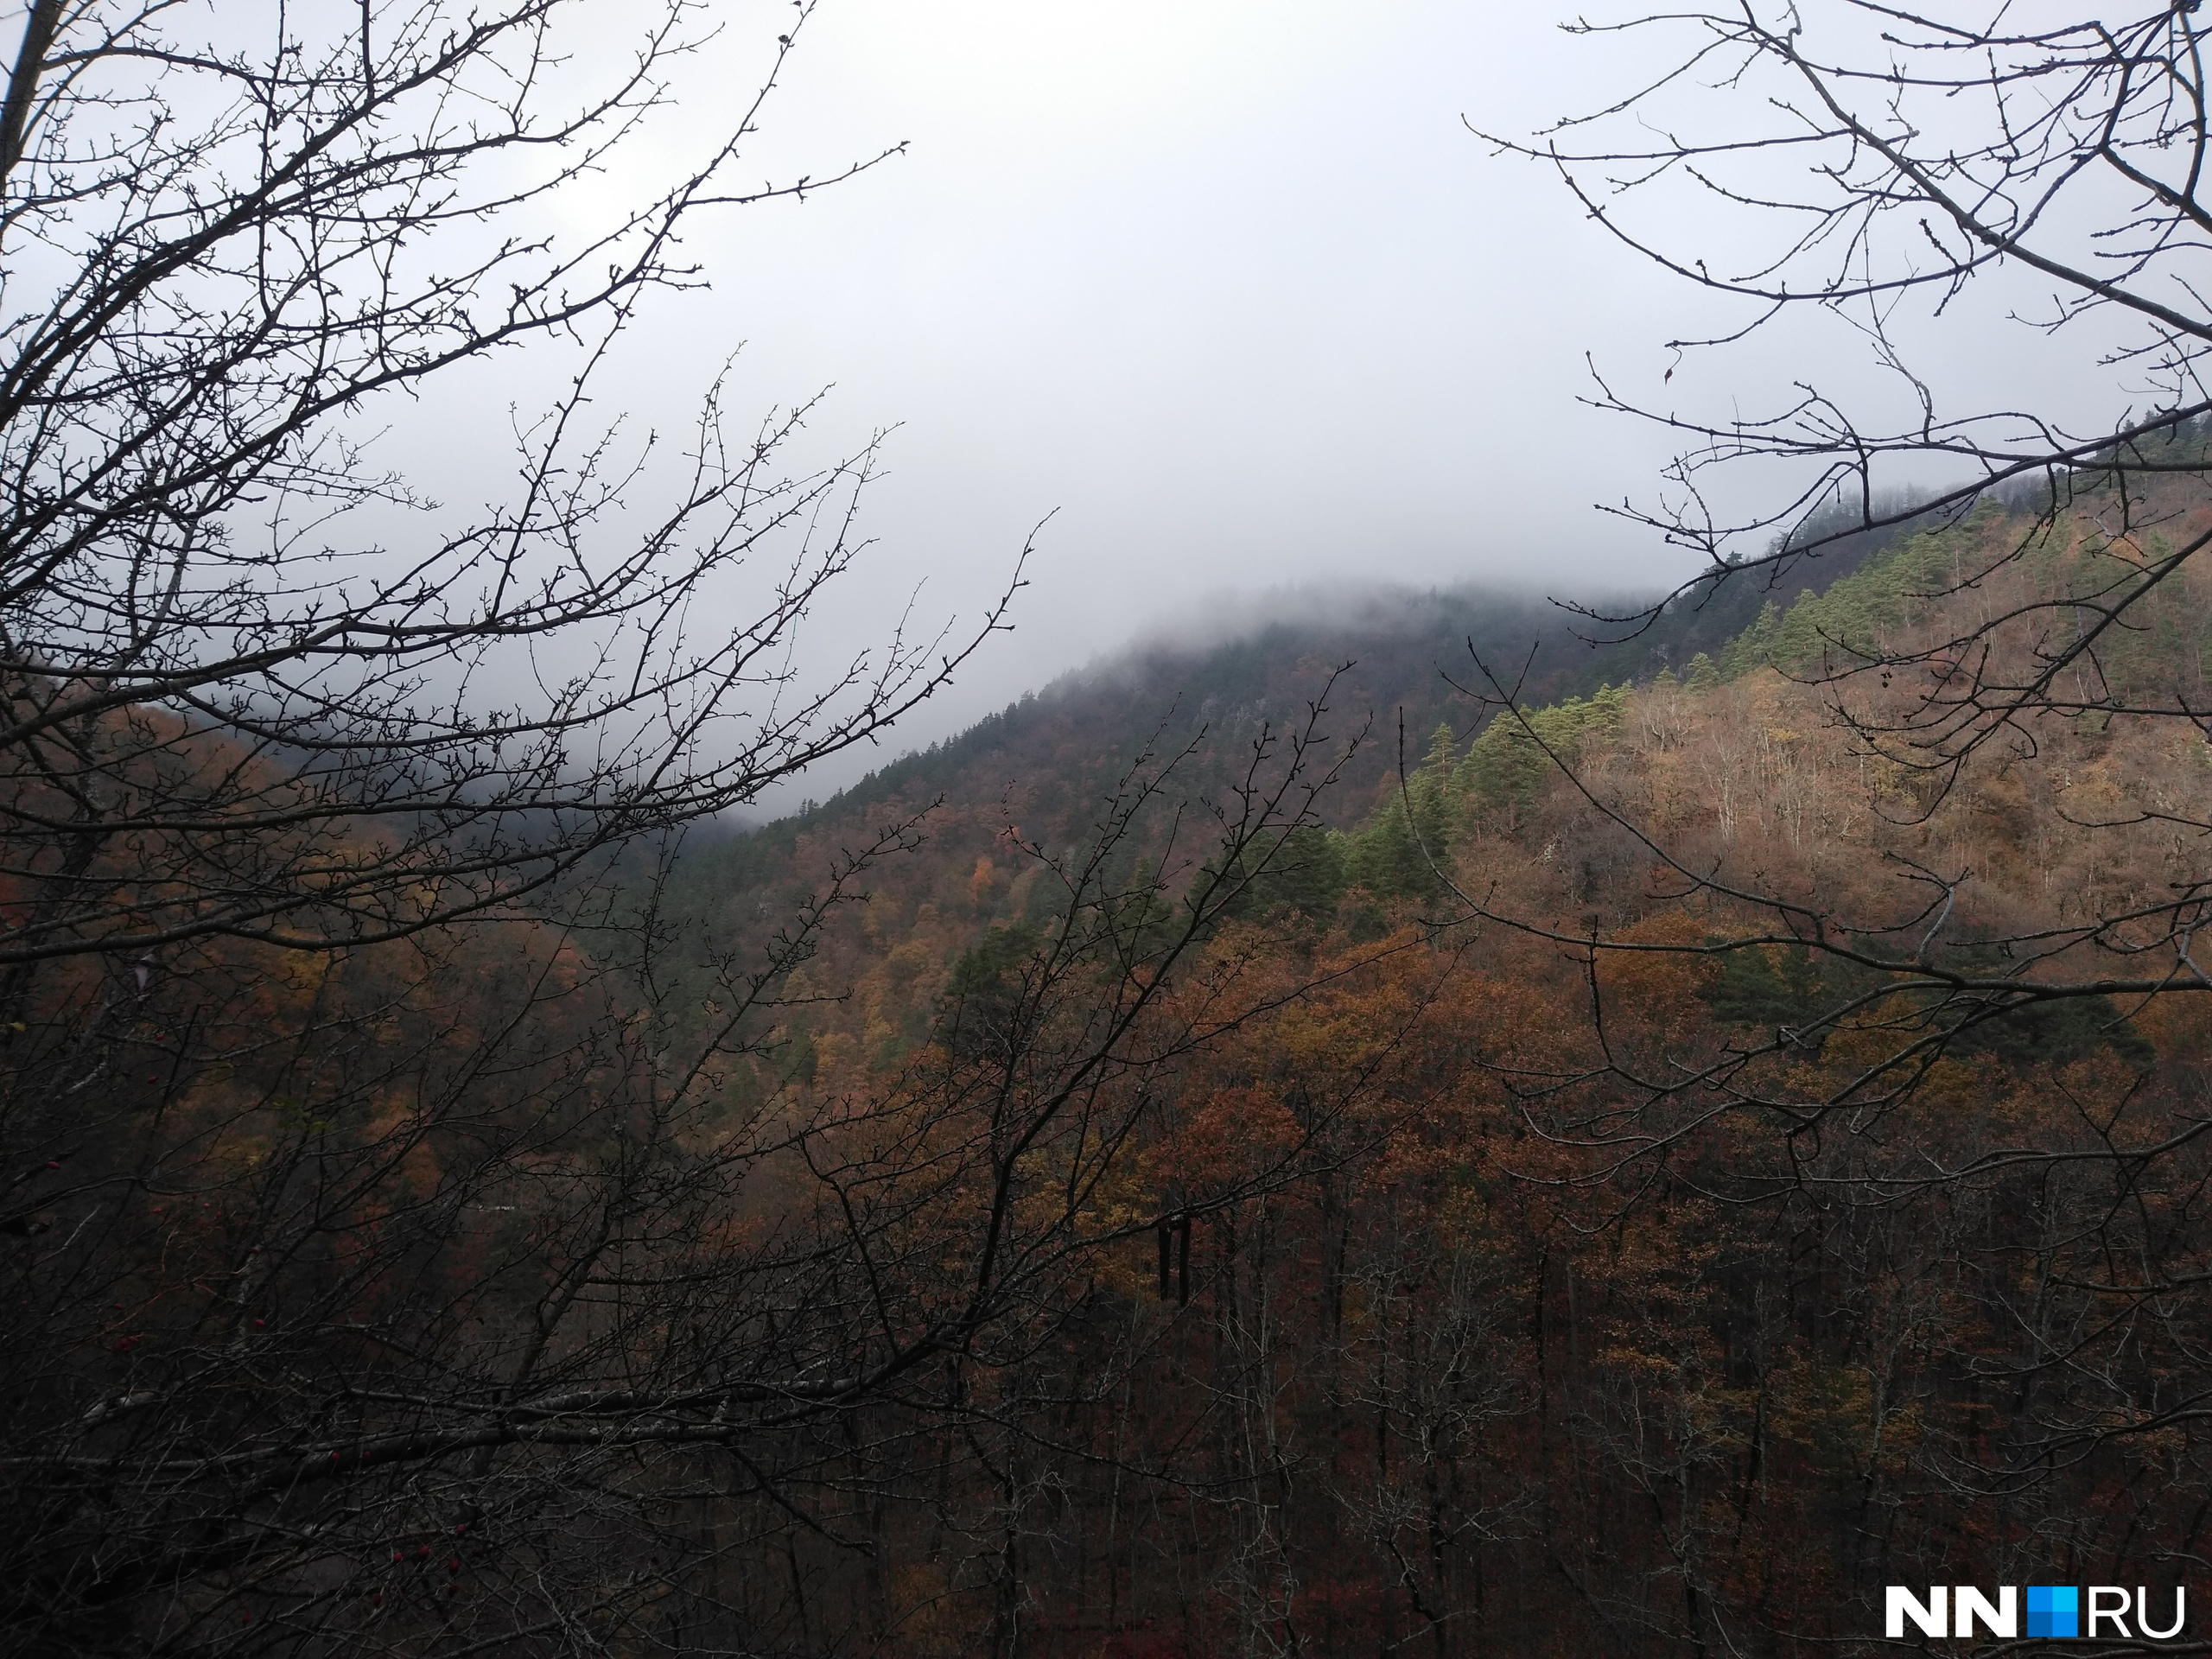 Пару дней было пасмурно, вершины гор были в дымке тумана